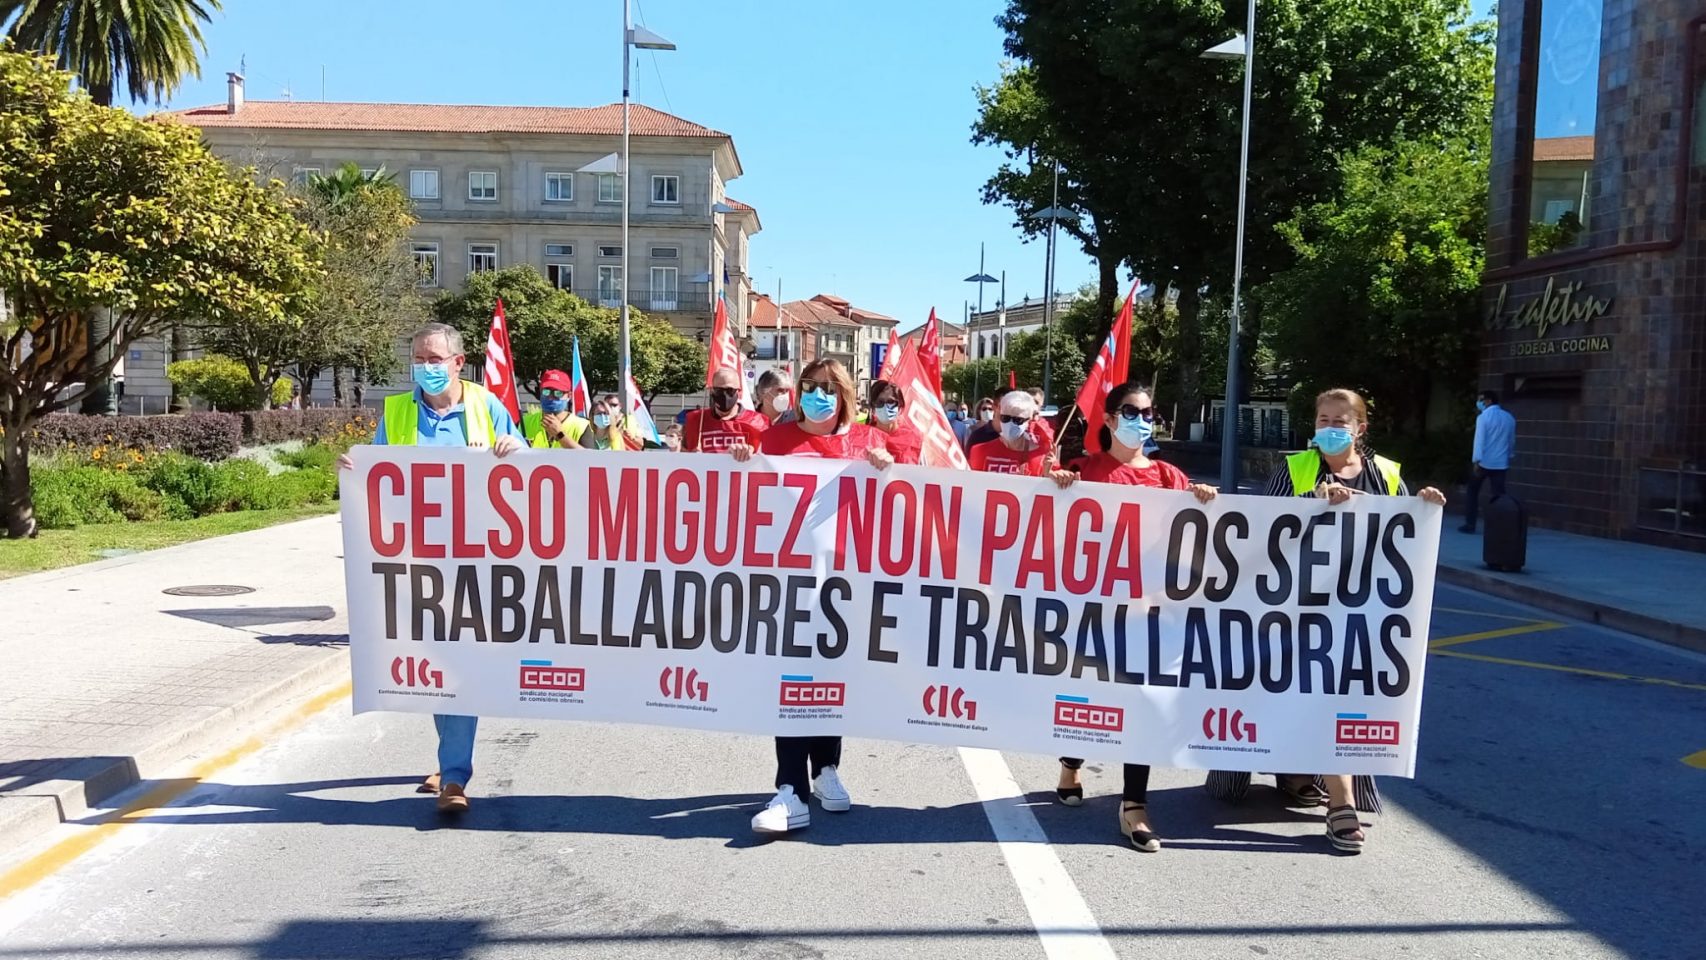 Protesta de trabajadores de Celso Míguez en Pontevedra 